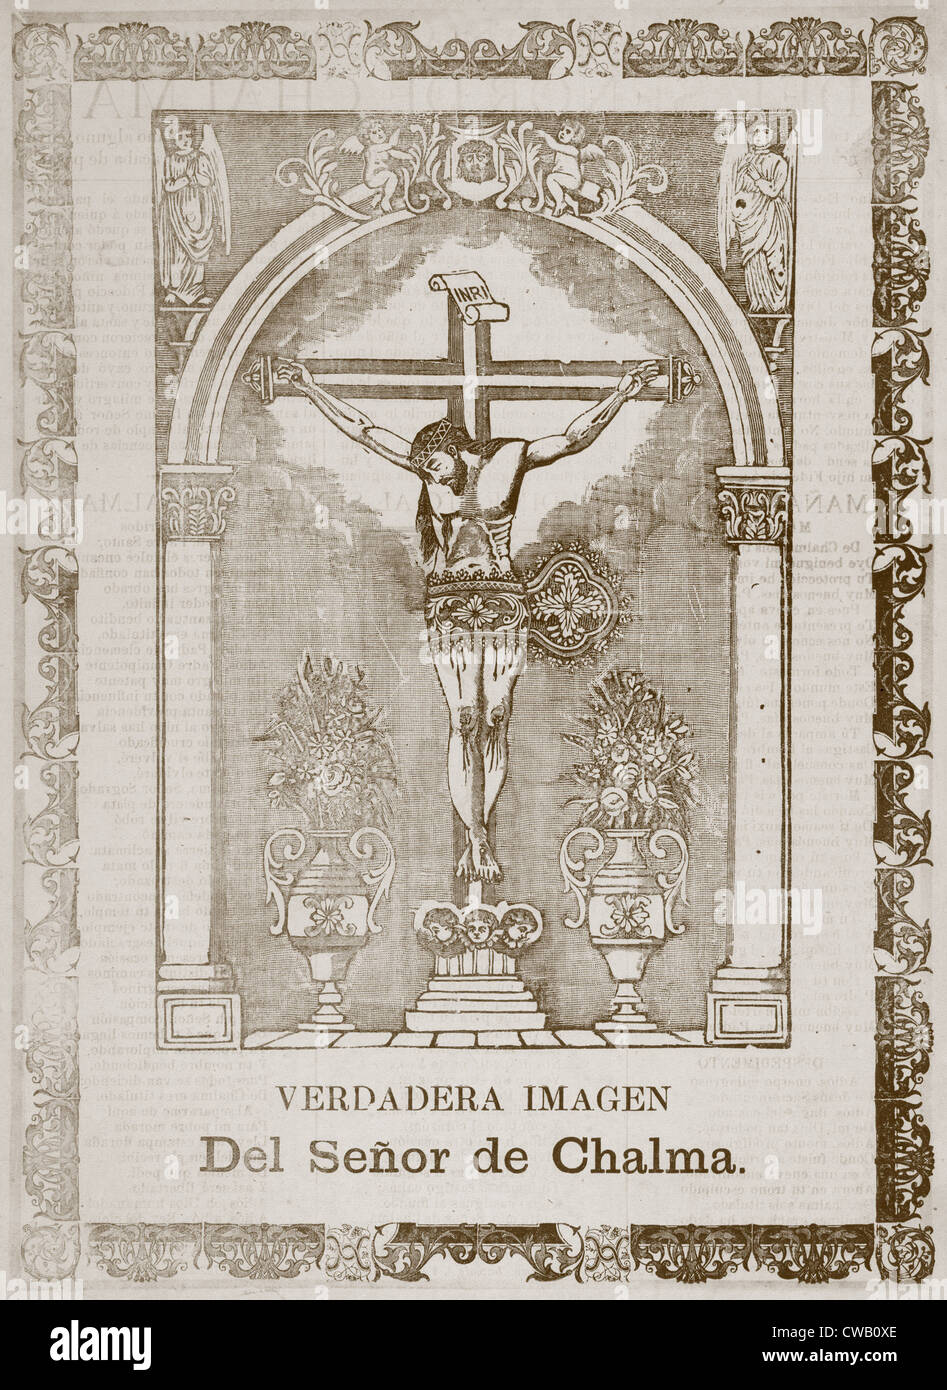 Jésus Christ, titre : True Image du seigneur de Chalma, par José Guadalupe Posada, Mexico, dessin, vers 1903. Banque D'Images